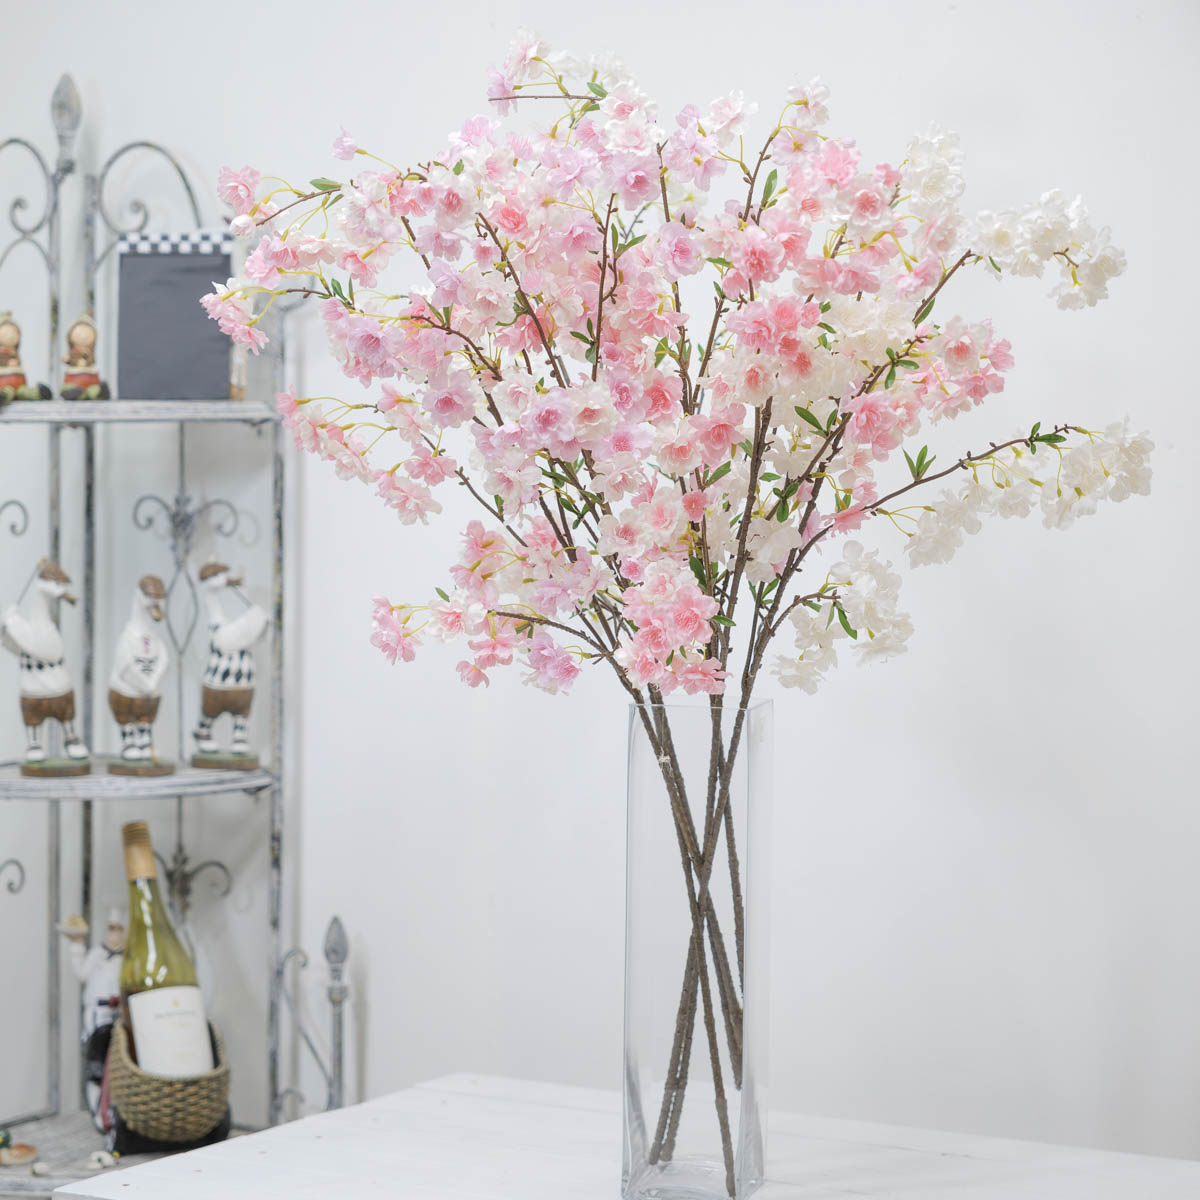 실크플라워 리얼 벚꽃 브렌치 100cm 화병에 색상별 2개씩 꽂아놓은 사진